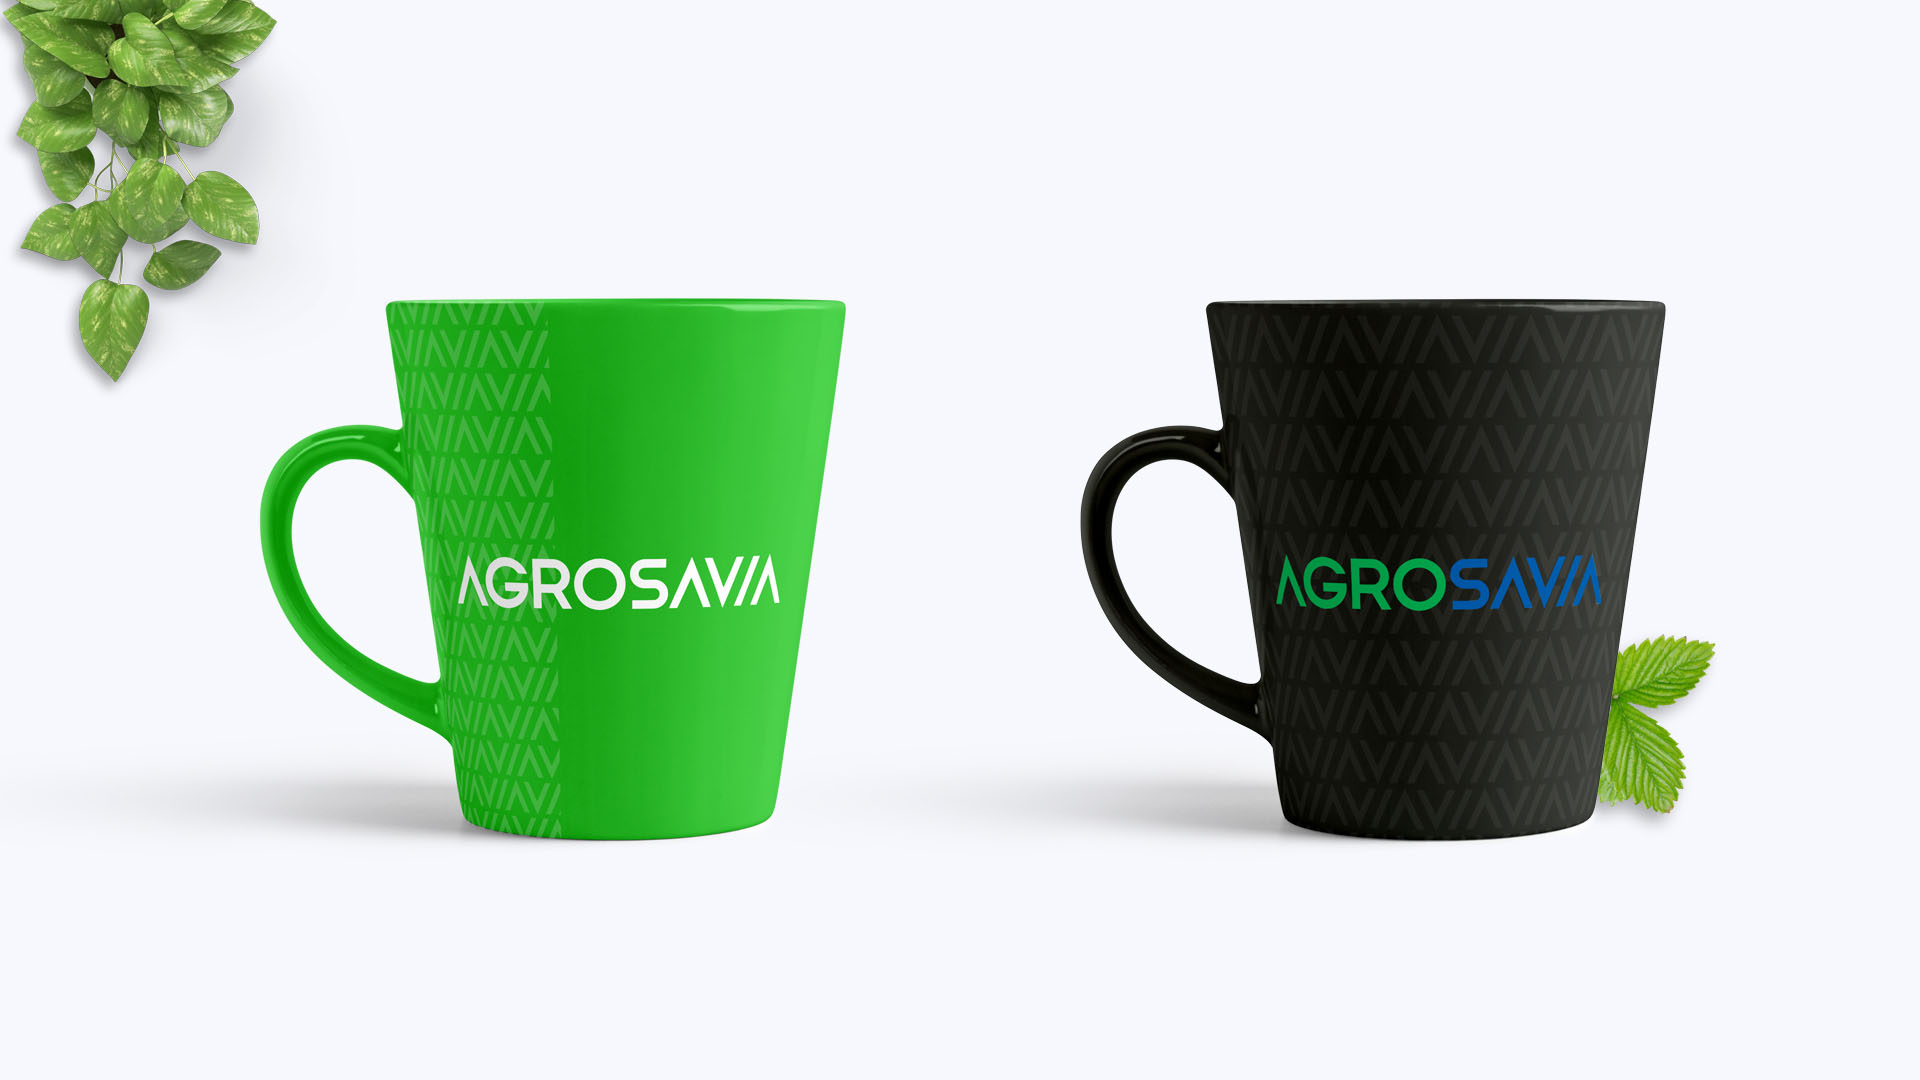 comunicación y diseño corporativo de la marca Agrosavia